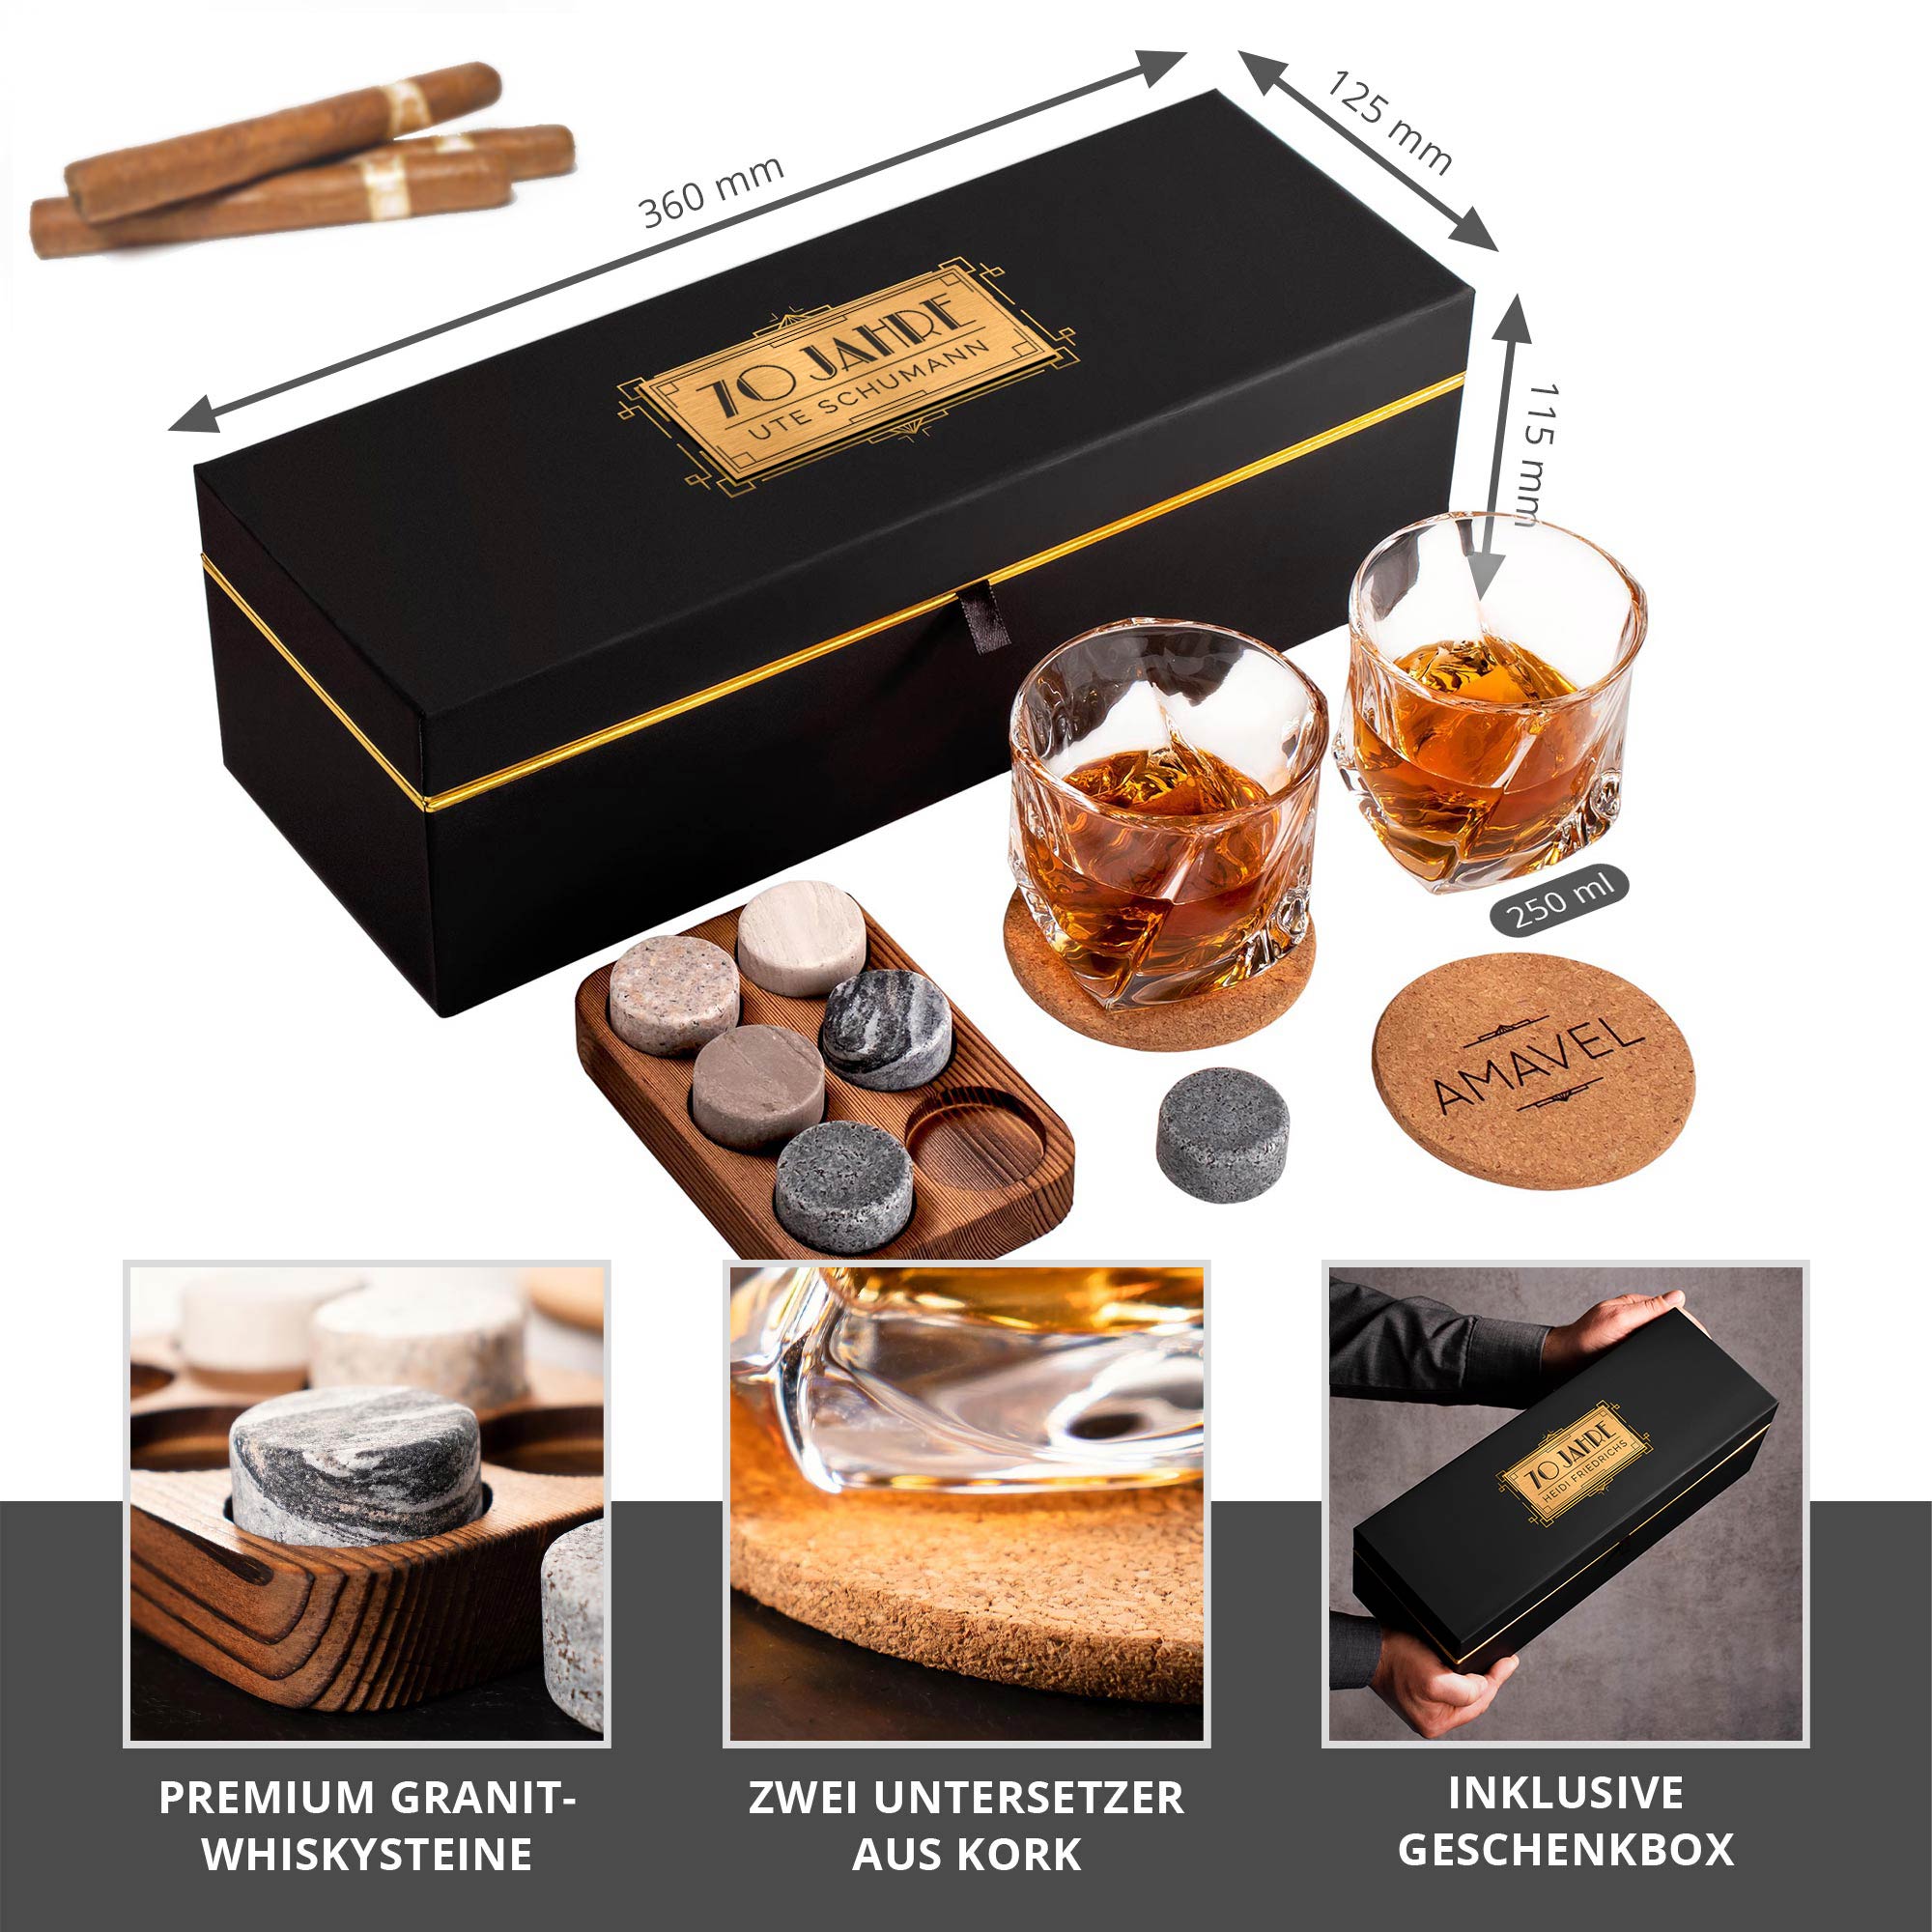 Whisky-Geschenk-Box aus Holz mit Gravur Bester Bruder 2 Gläser Whiskysteine 